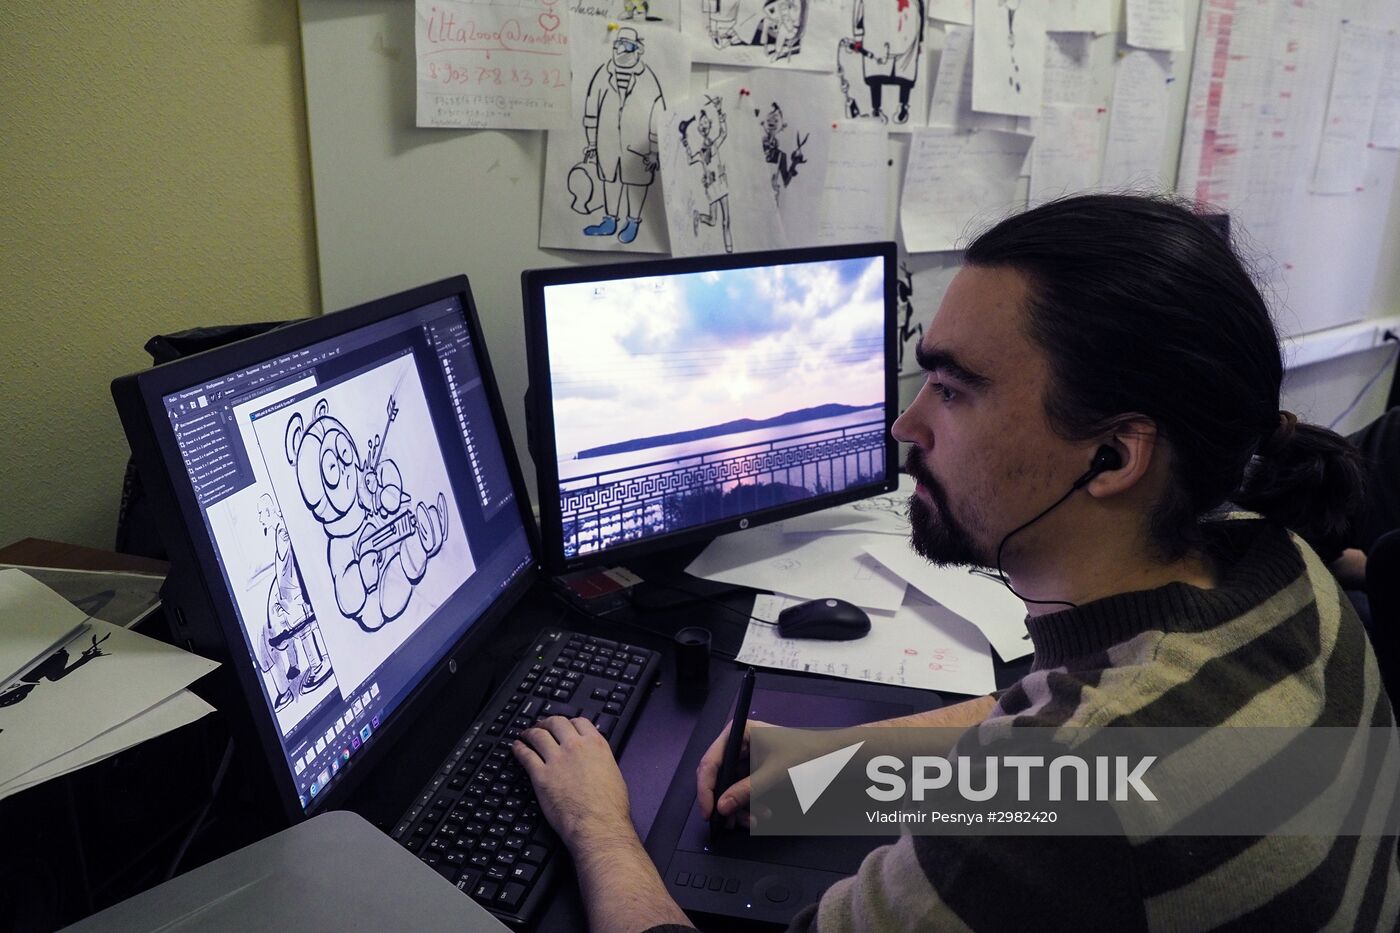 Soyuzmultfilm animation studio